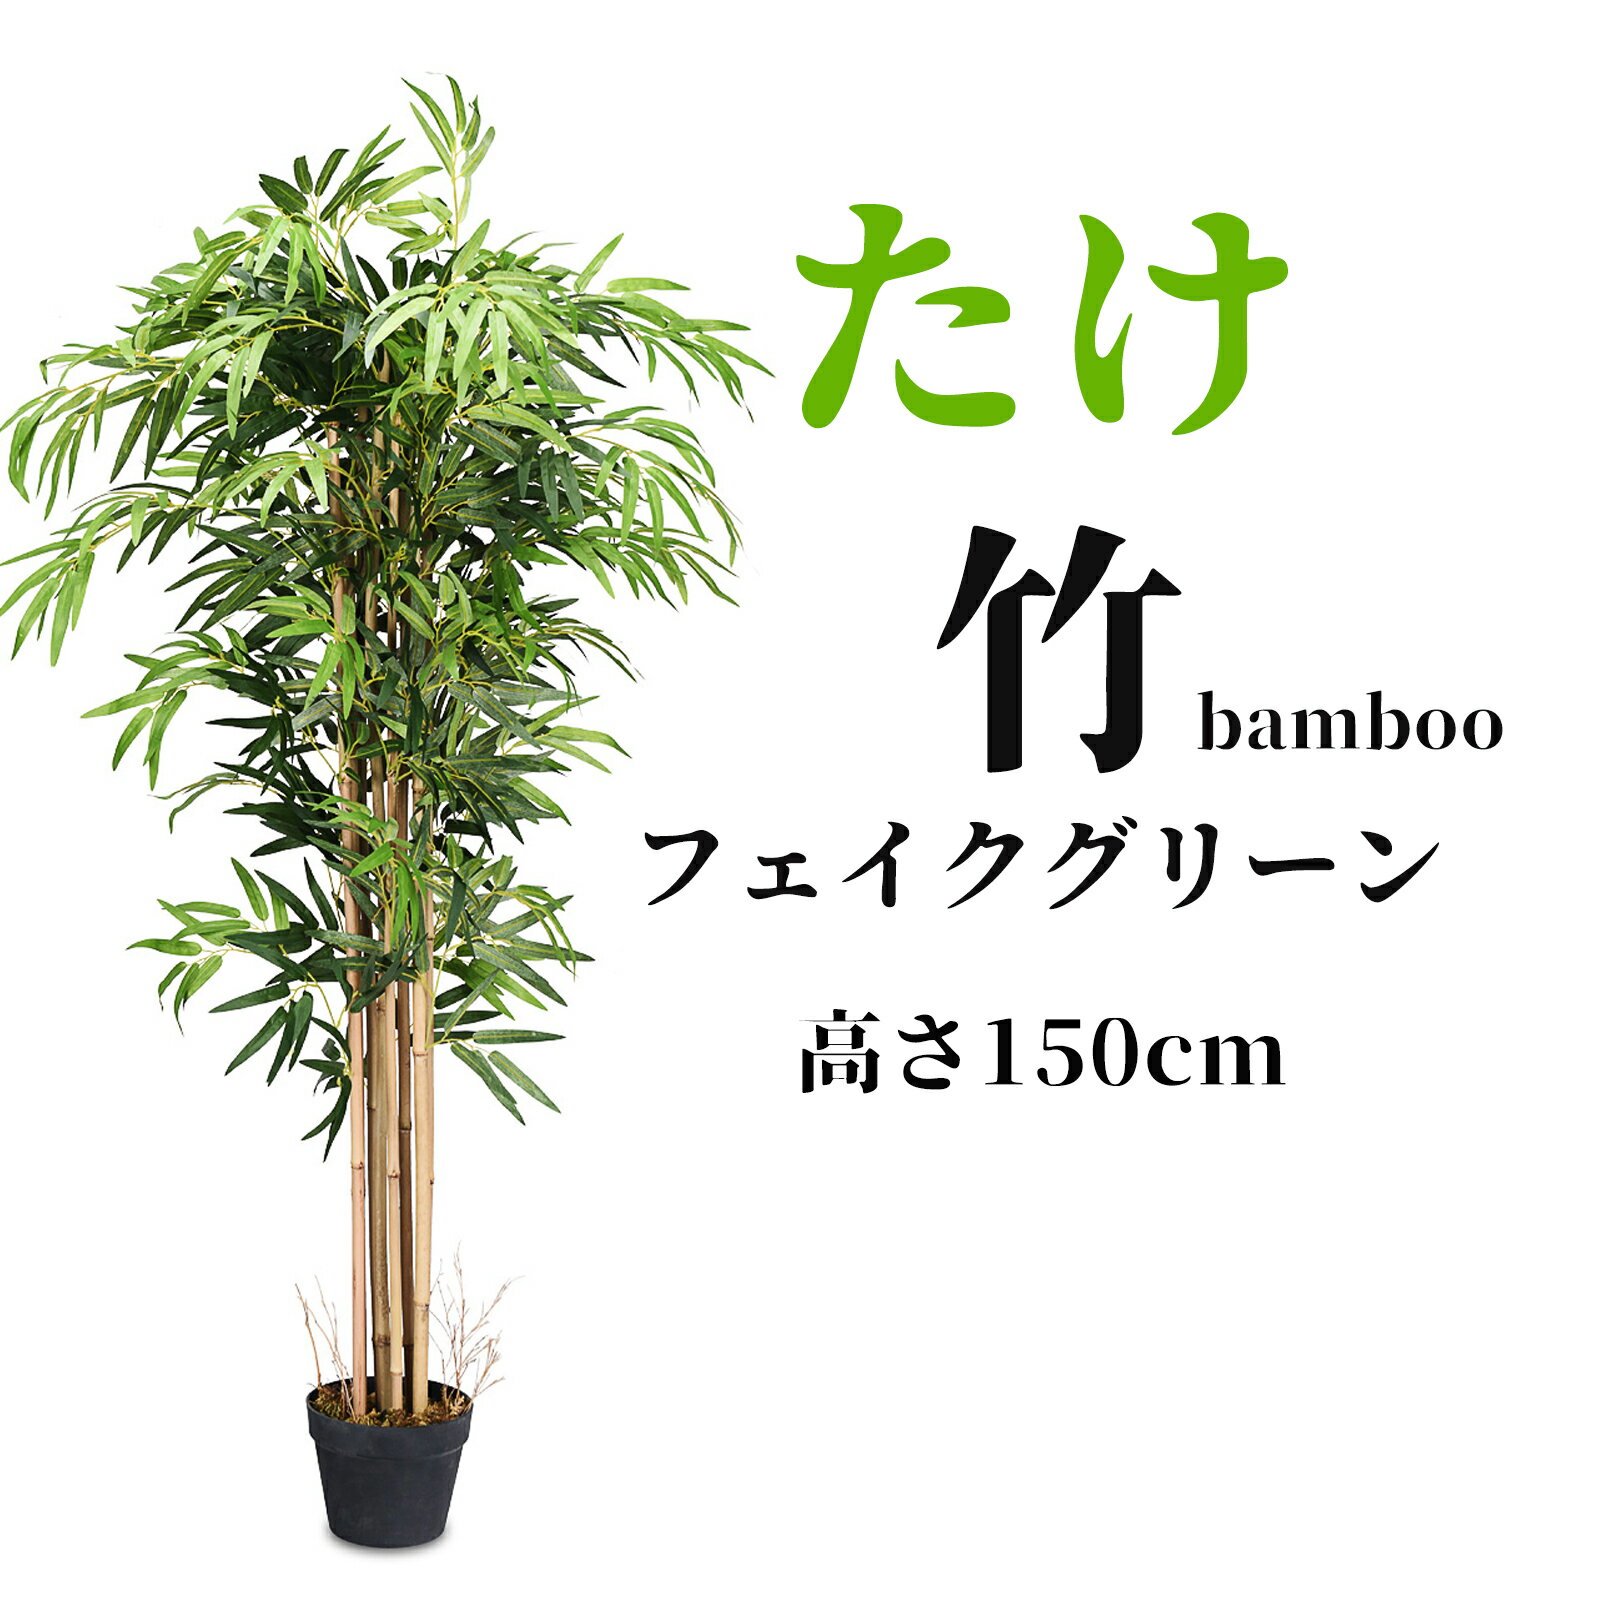 送料無料 大型 人工観葉植物 造花 たけ 竹 高さ150cm フェイクグリーン 水やり不要 肥料不要 枯れない インテリア装飾 おしゃれ フェイクツリー